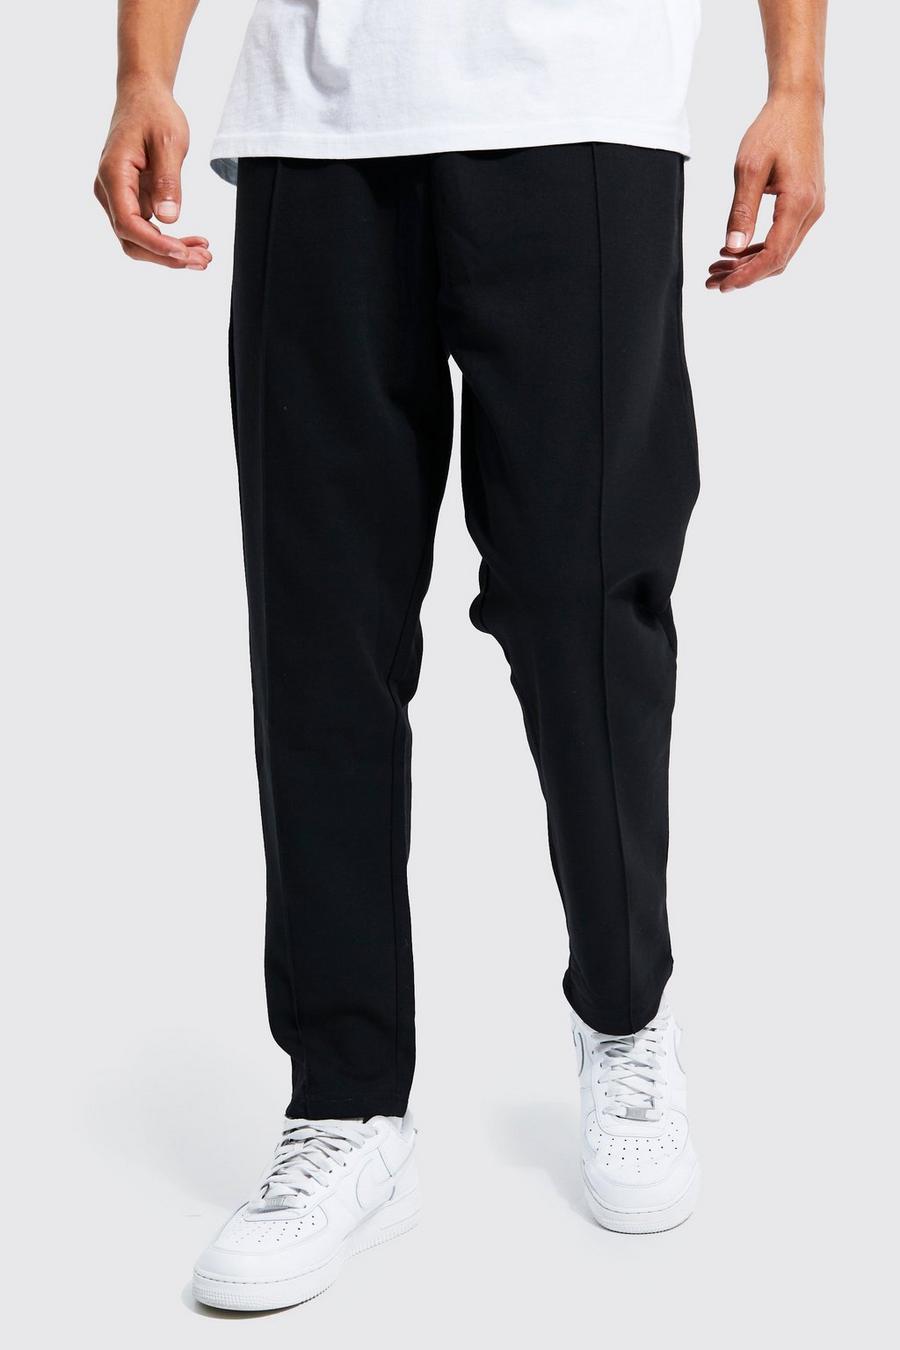 שחור מכנסי טרנינג קרופ בגזרת קרסול צרה עם קפל, לגברים גבוהים image number 1